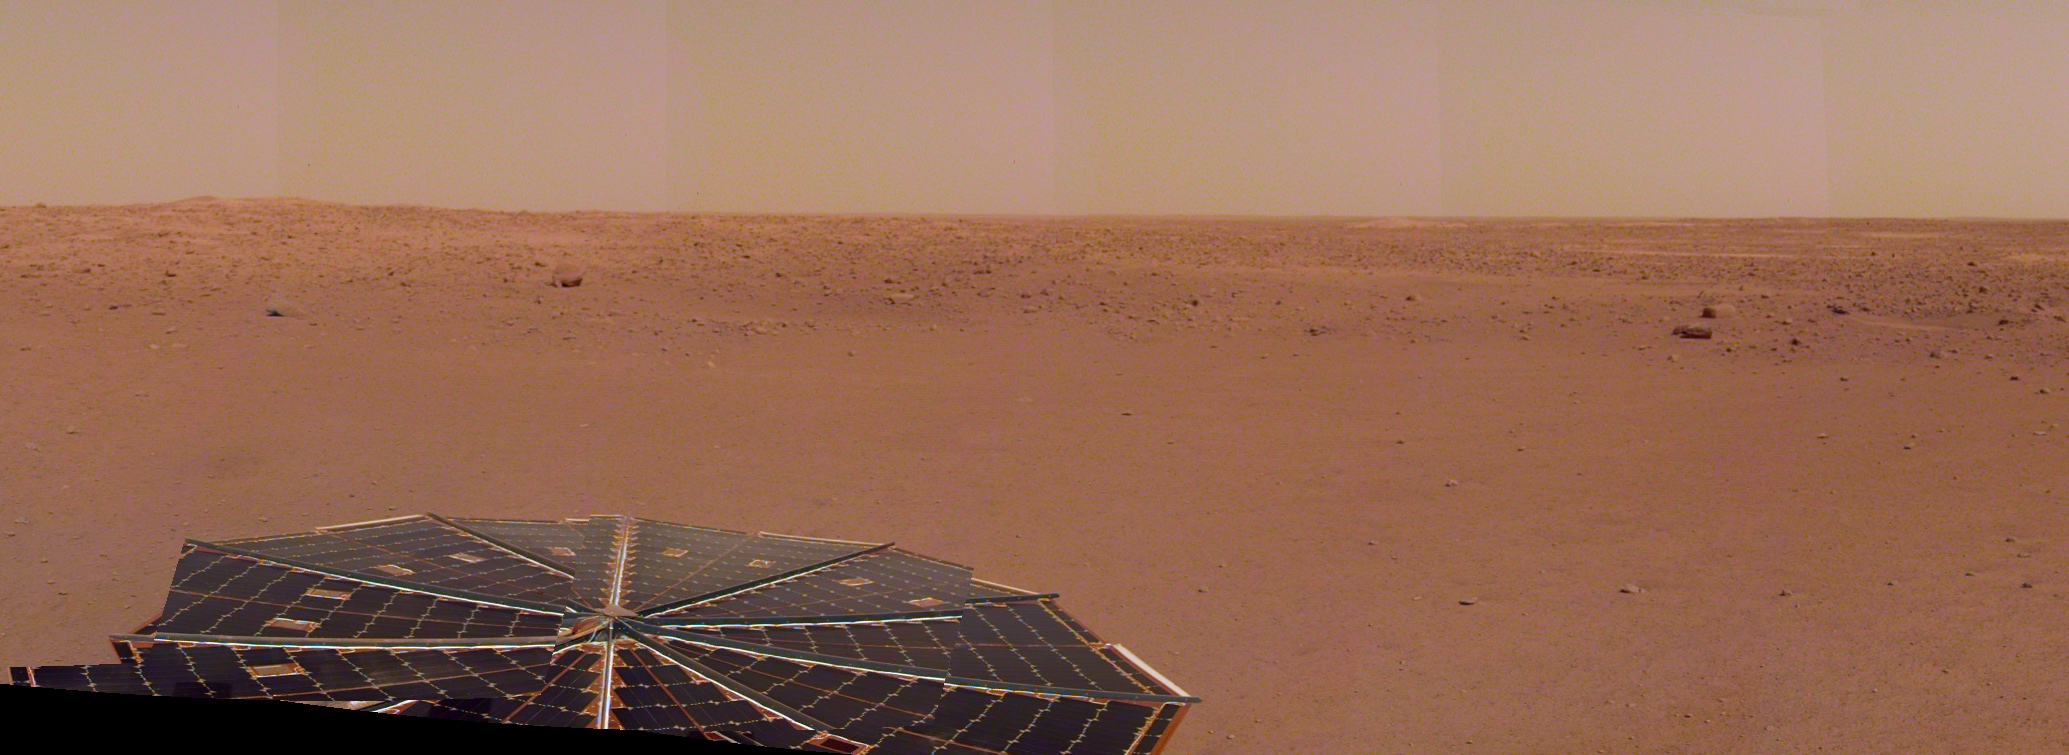 Panorama constitué à partir des images prises le 9 décembre 2018, quelques jours après son atterrissage sur Mars. © Nasa, JPL-Caltech